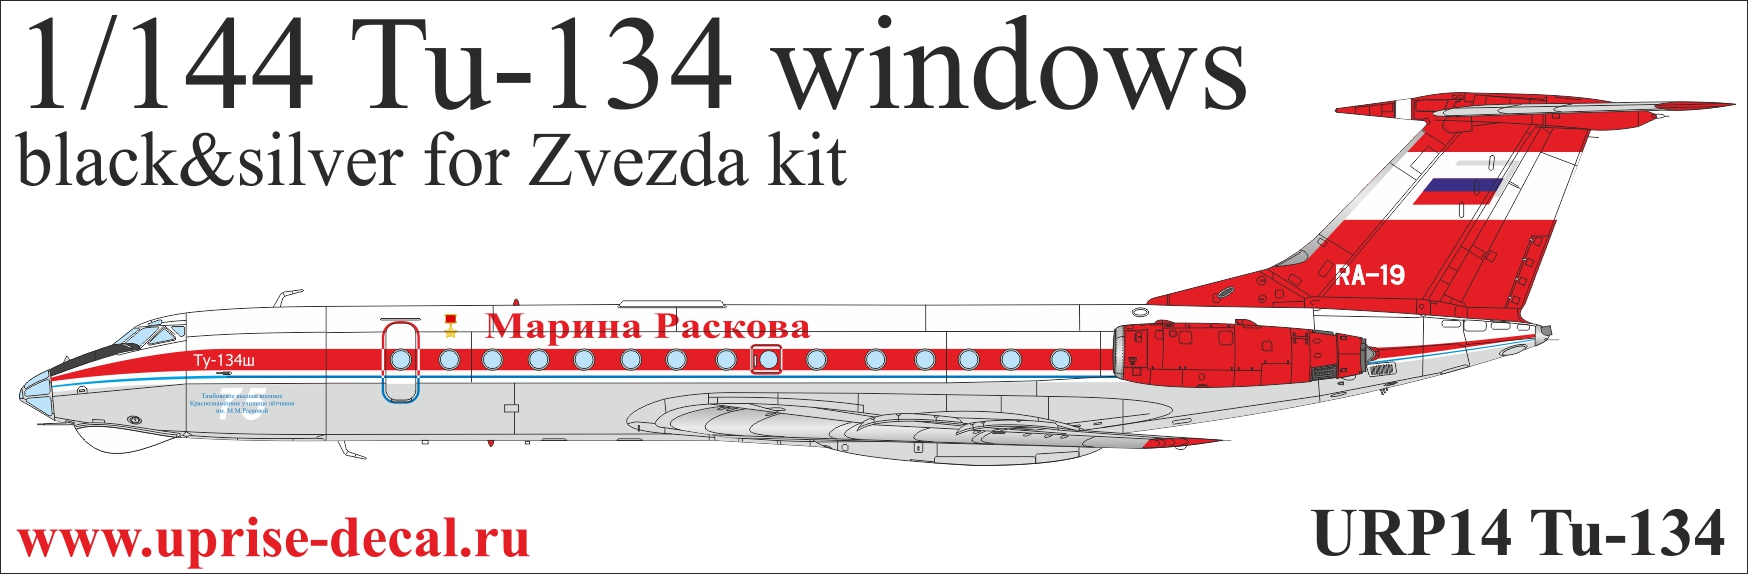 URP14  декали  Tupolev Tu-134 for Zvezda kit (black)  (1:144)